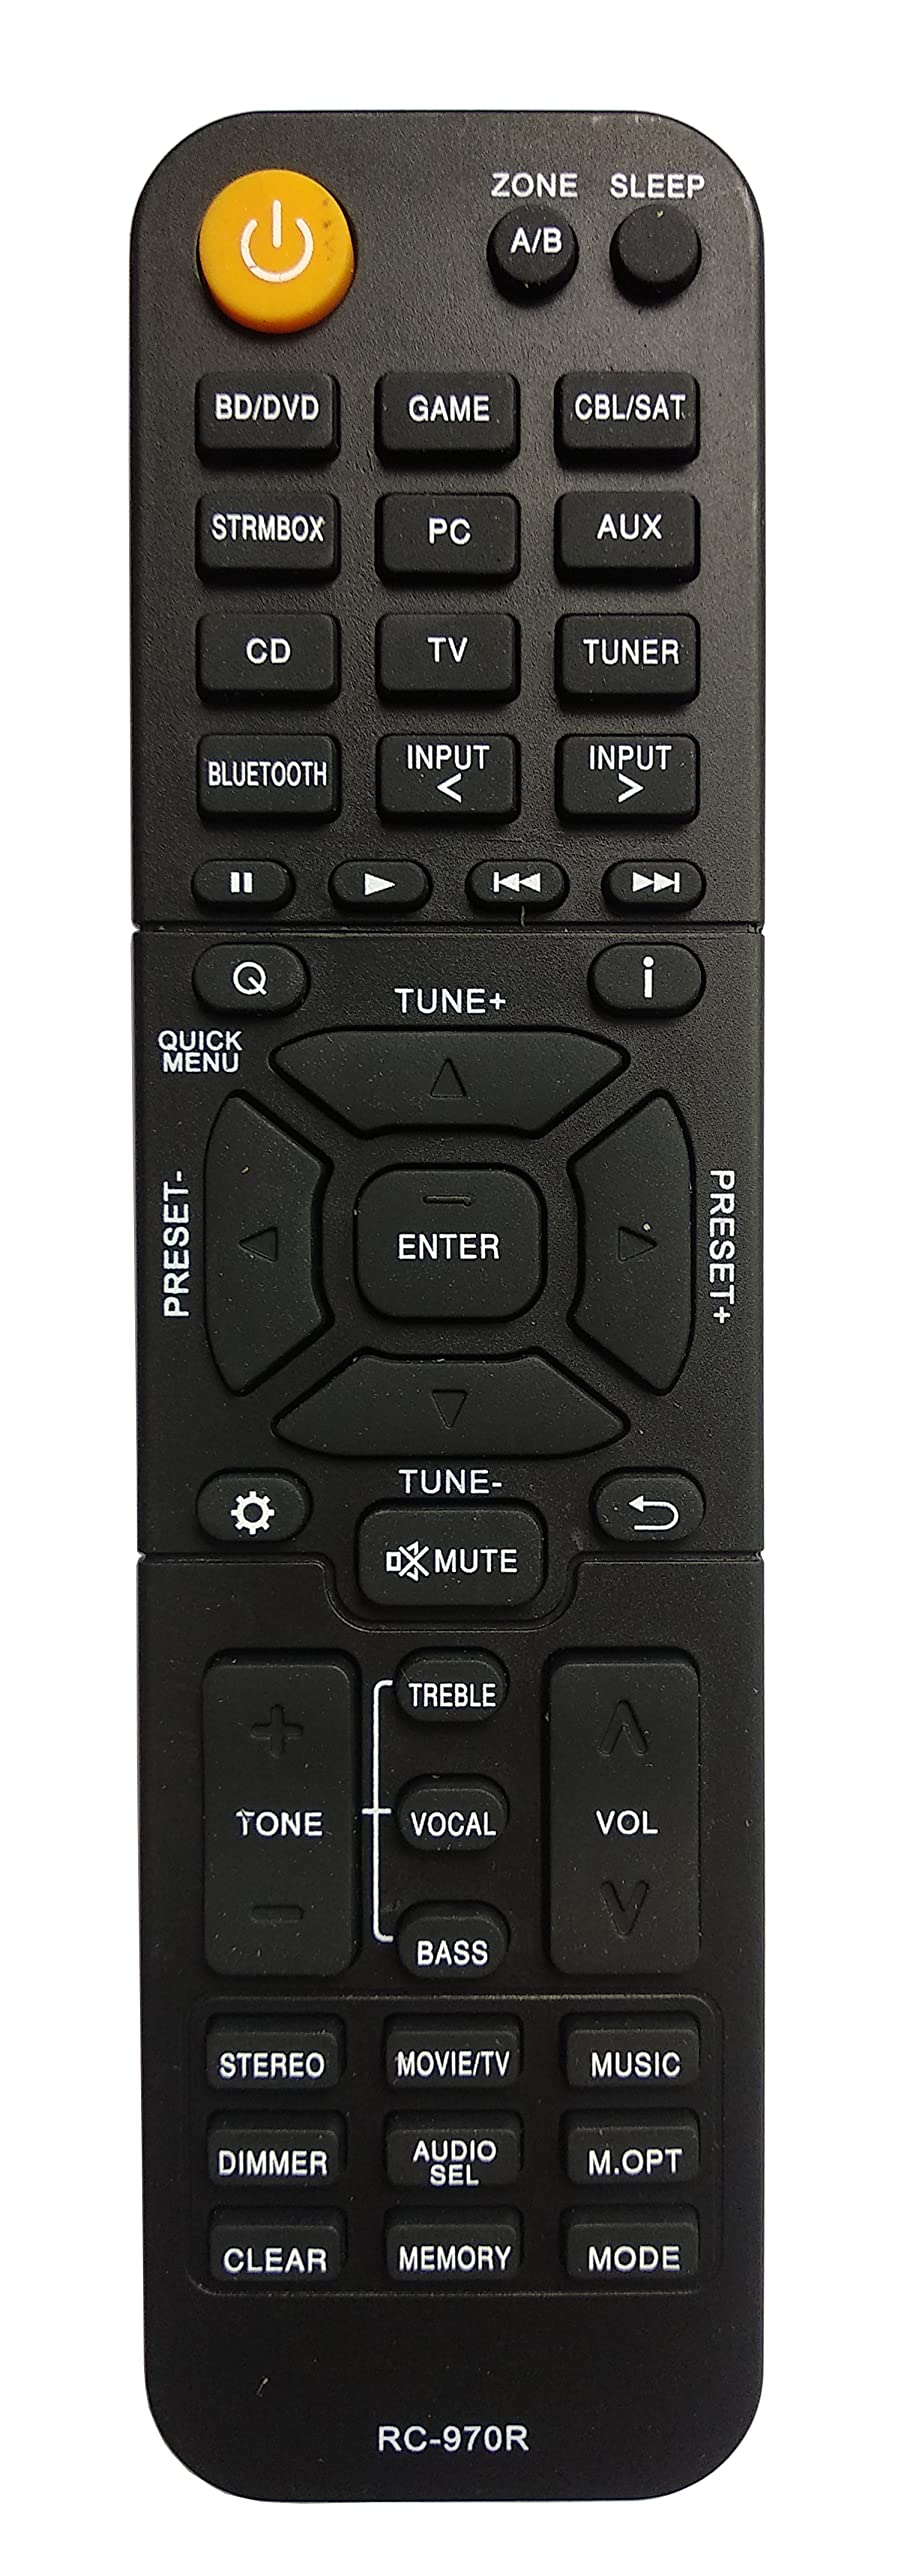  [AUSTRALIA] - Gorilla babo Universal Remote Compatible for ONKYO RC-970R TX-SR393 HT-R398 TX-SR494 HT-S3910 Audio/Video Receiver Remote Control